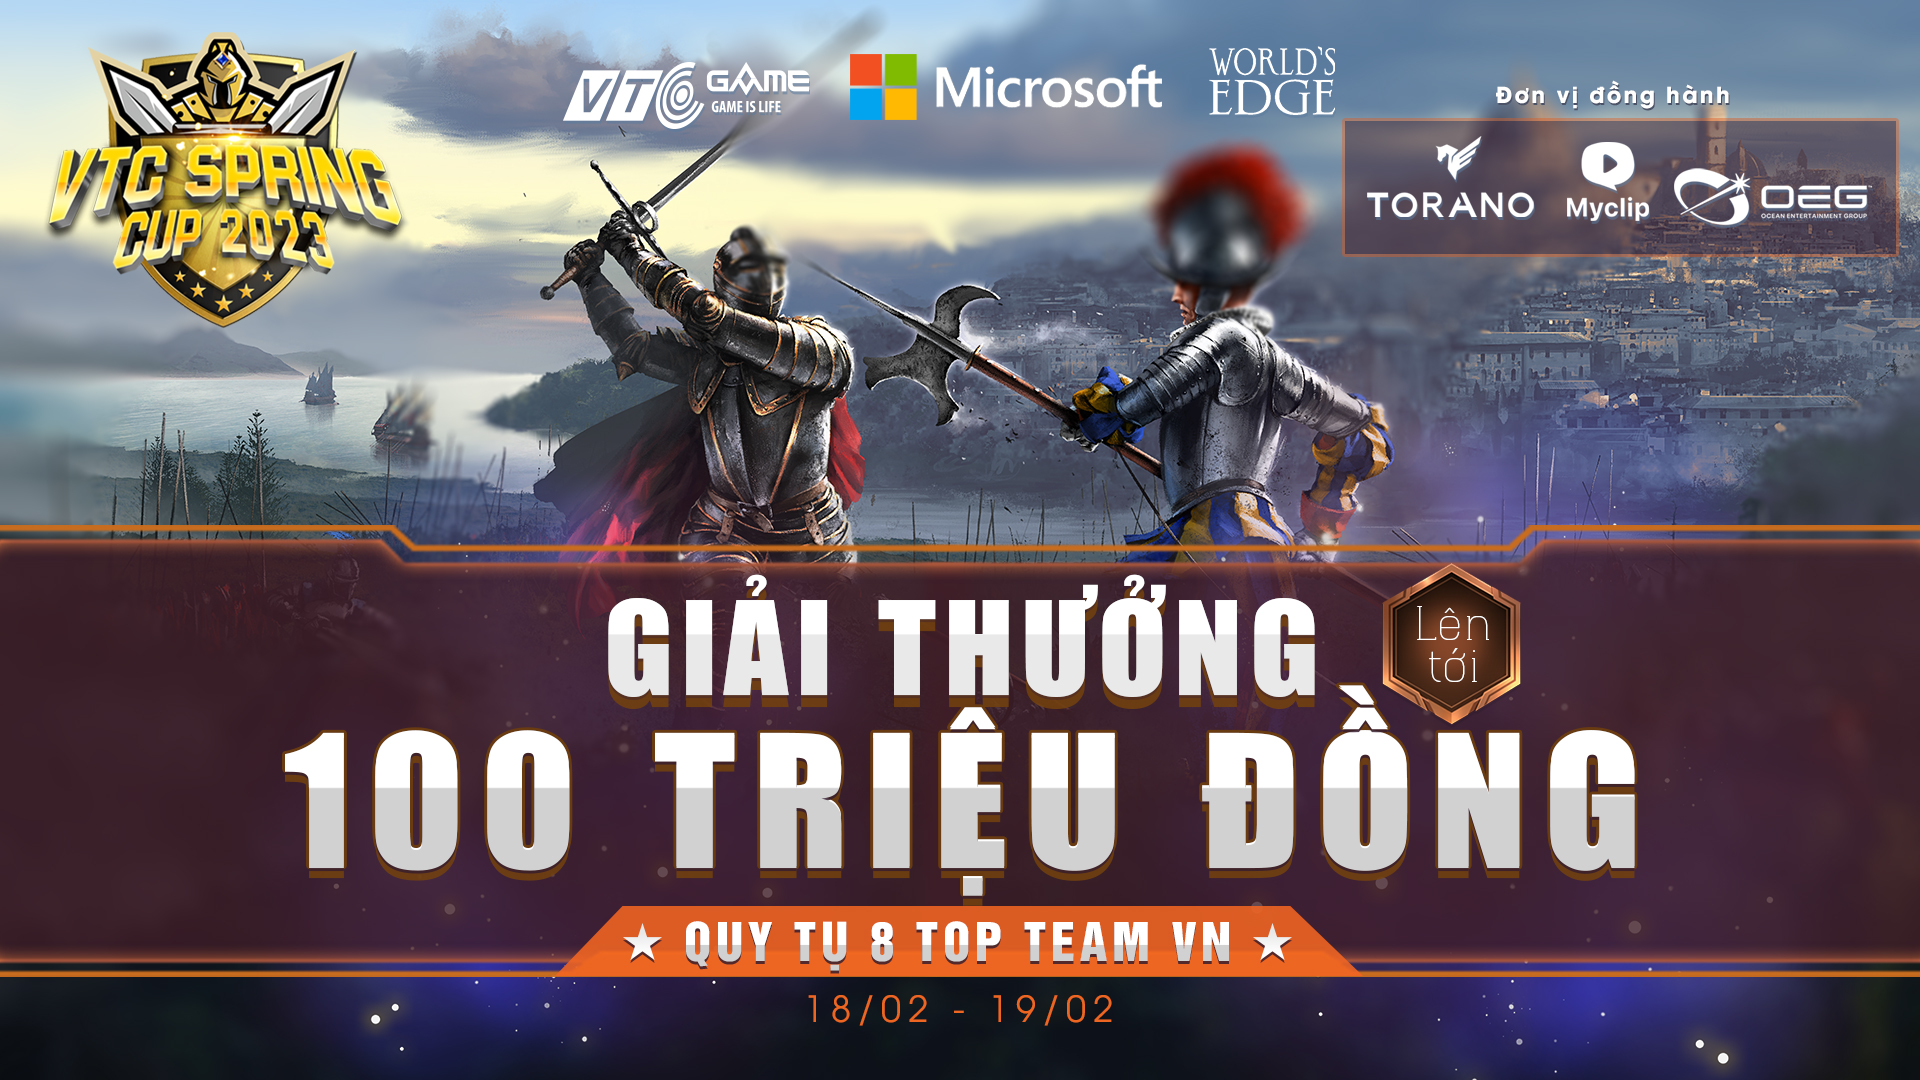 NPH VTC Game chính thức công bố giải đấu AoE - VTC Spring Cup 2023 với sự góp mặt của các tên tuổi hàng đầu tại Việt Nam